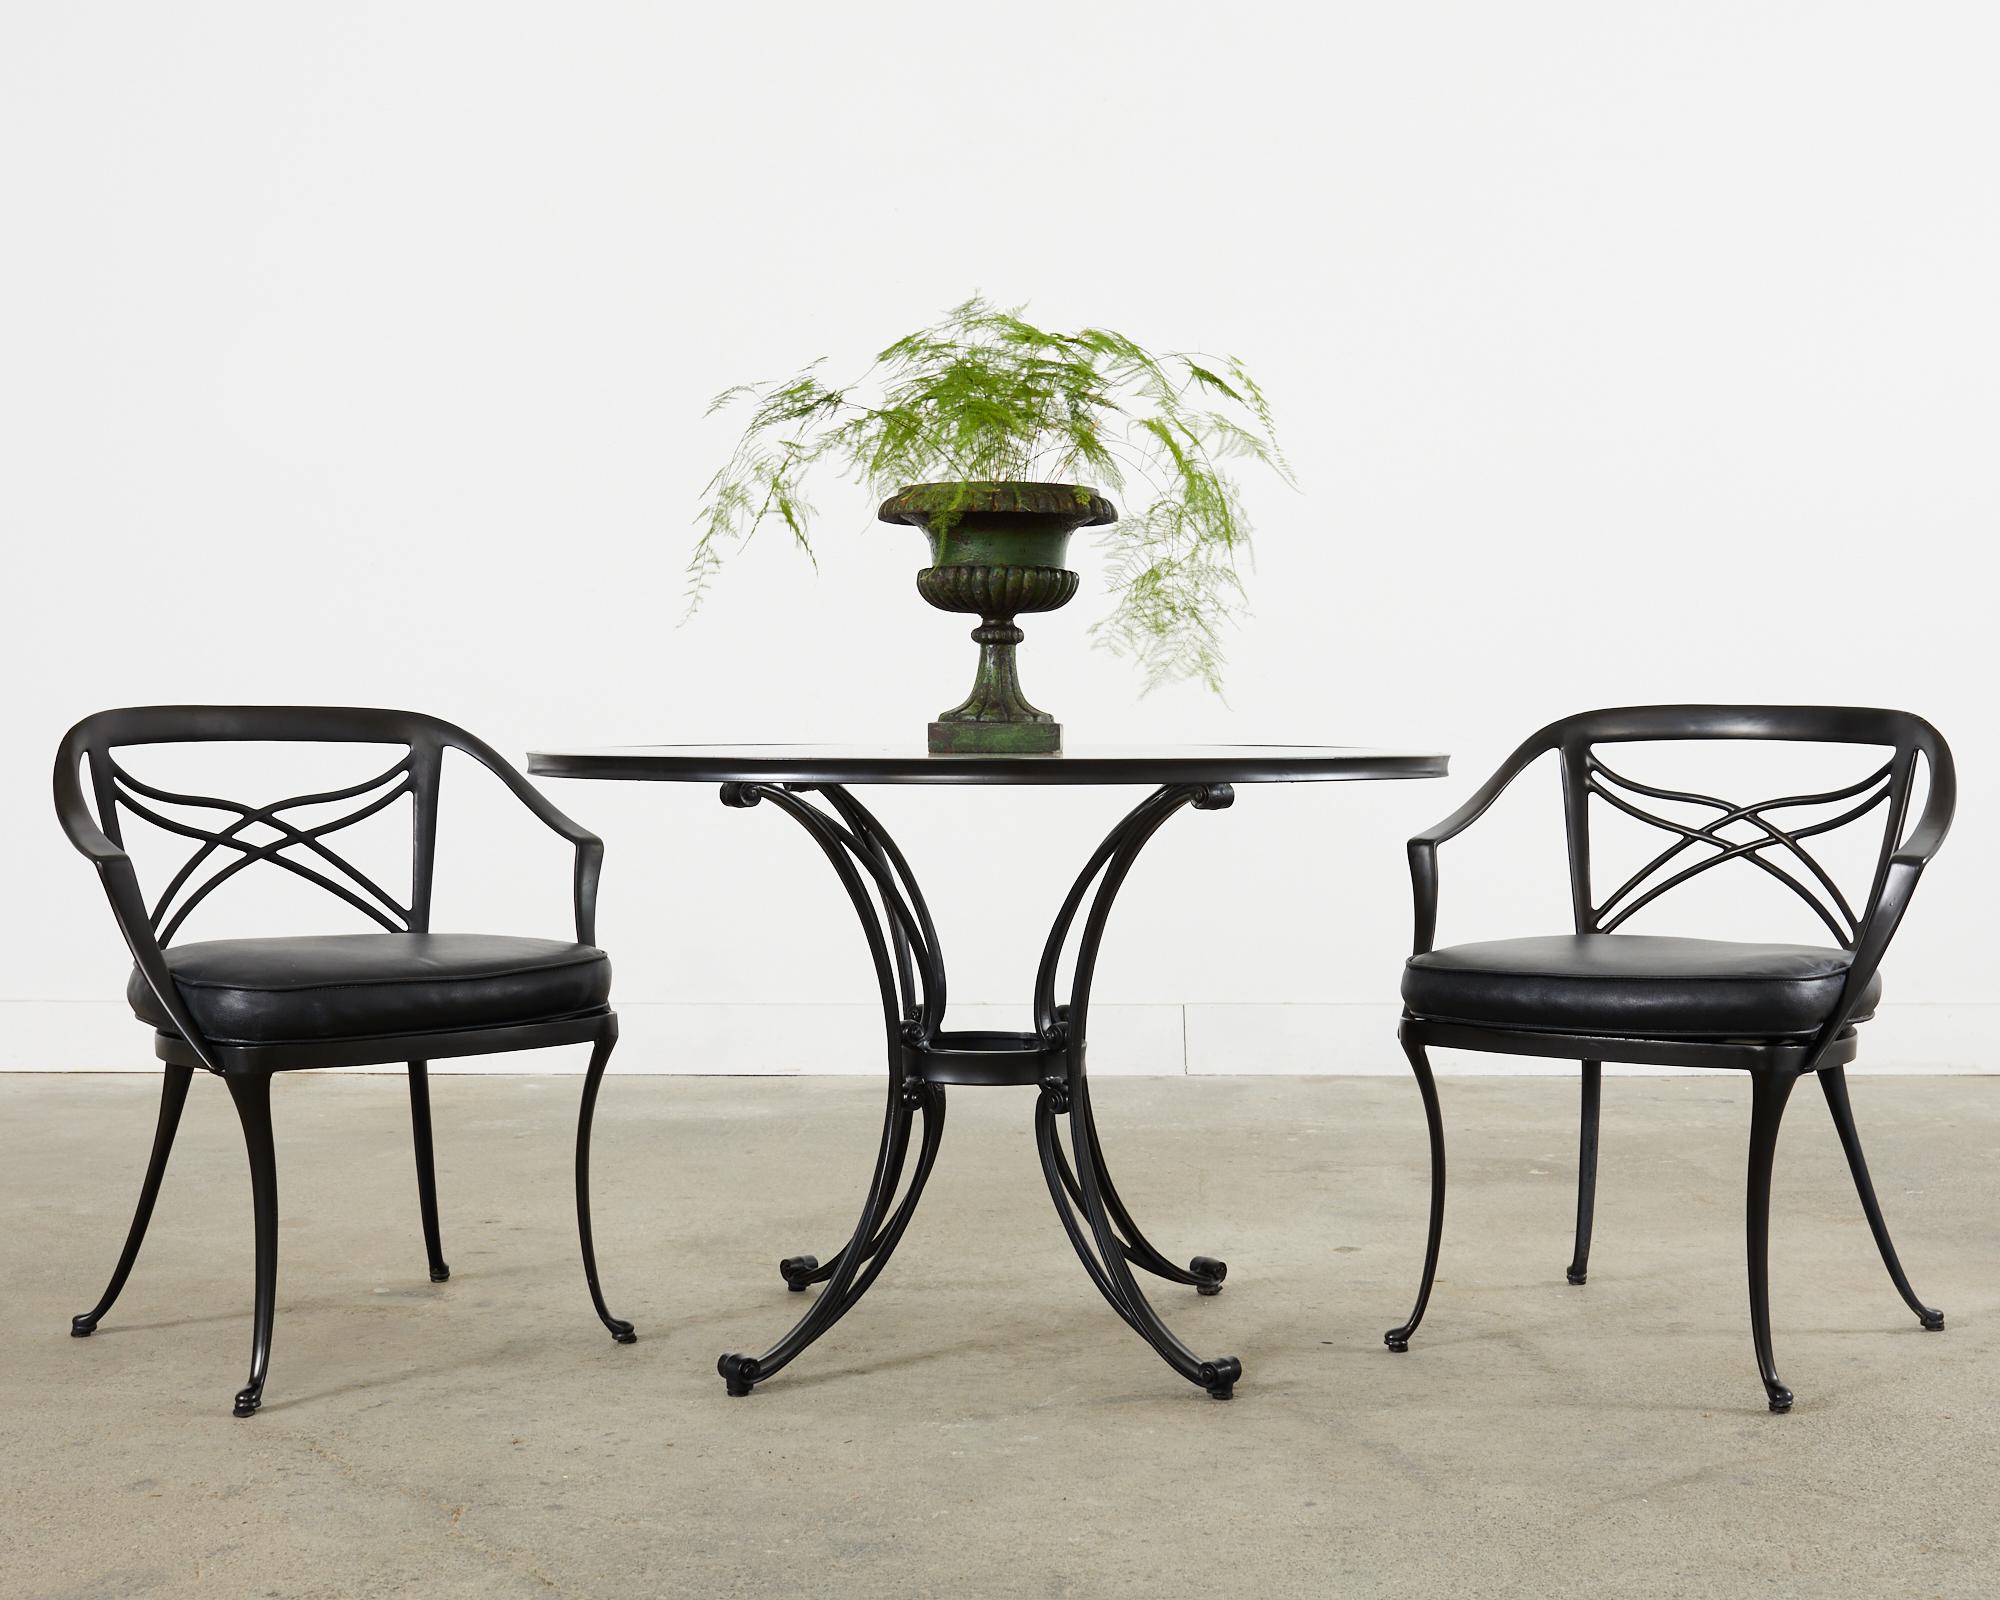 Terrassen- und Gartenmöbel im neoklassischen Stil, bestehend aus einem Esstisch mit Glasplatte und vier Stühlen. Bekannt als die klassische Collection'S von Brown Jordan. Hergestellt aus anmutig geschwungenem Aluminiumguss mit nachträglicher